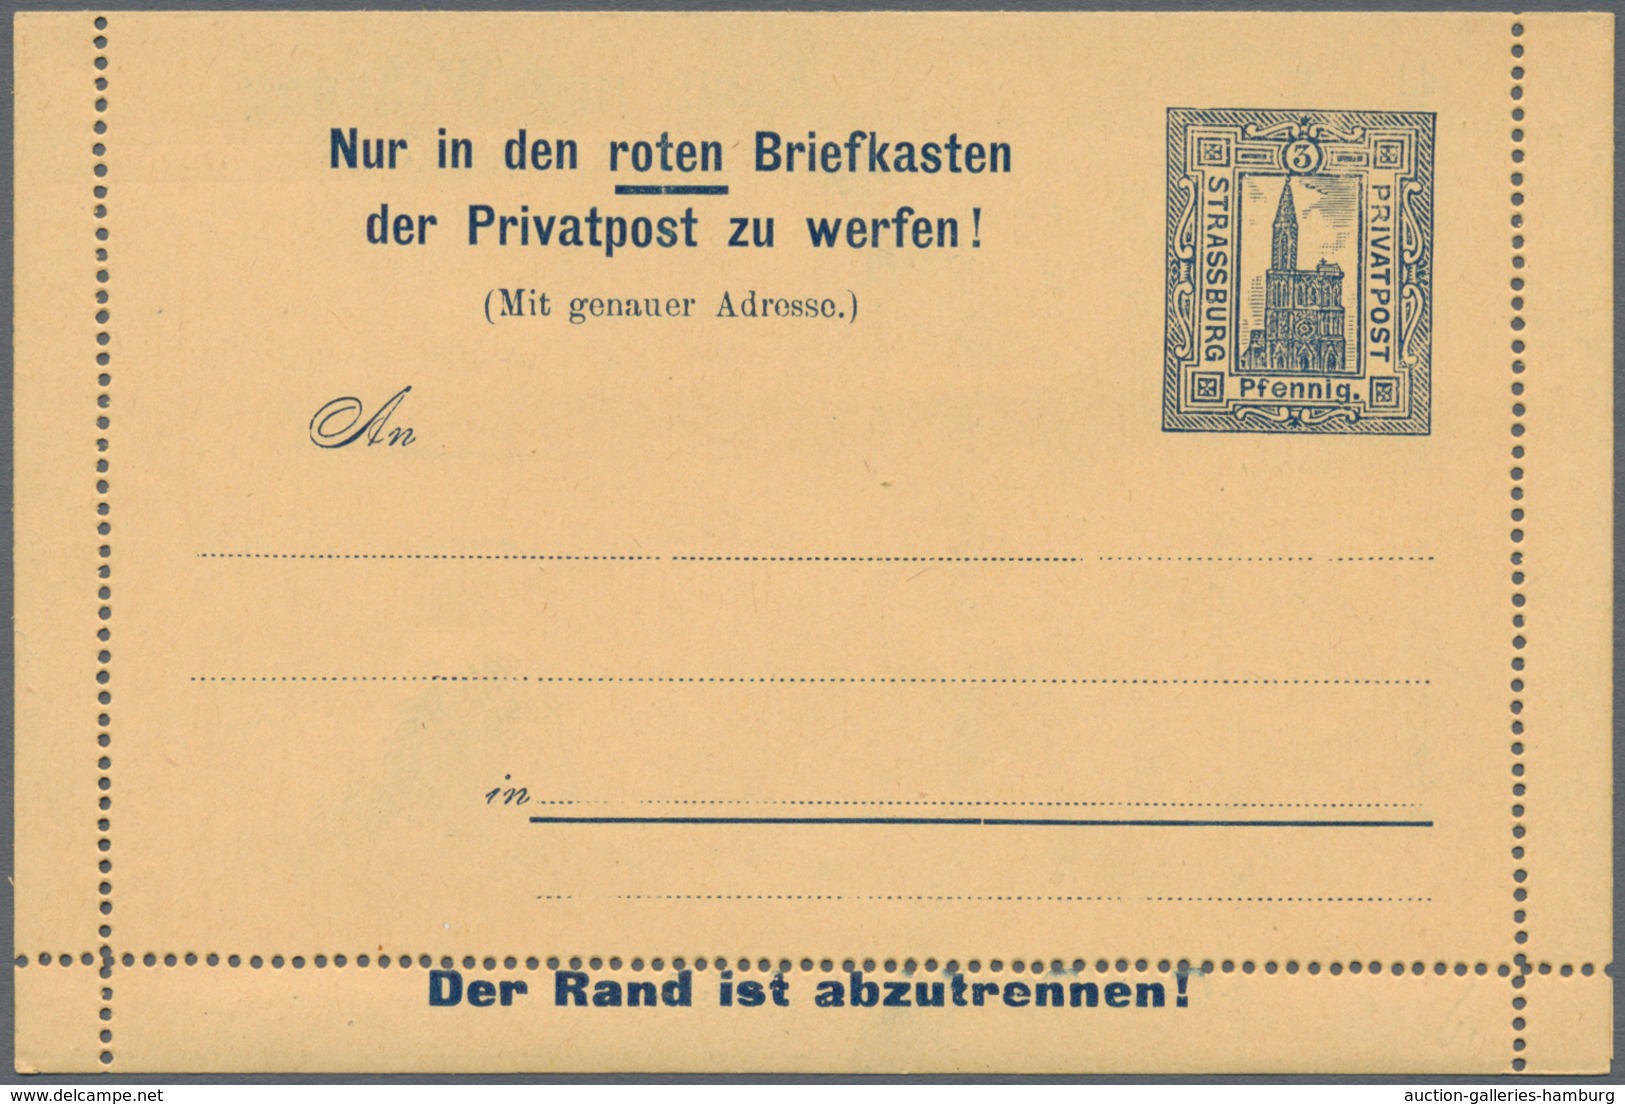 Deutsches Reich - Privatpost (Stadtpost): Strassburg, 1891/92: 5 Kartenbriefe, nicht gelaufen, selte